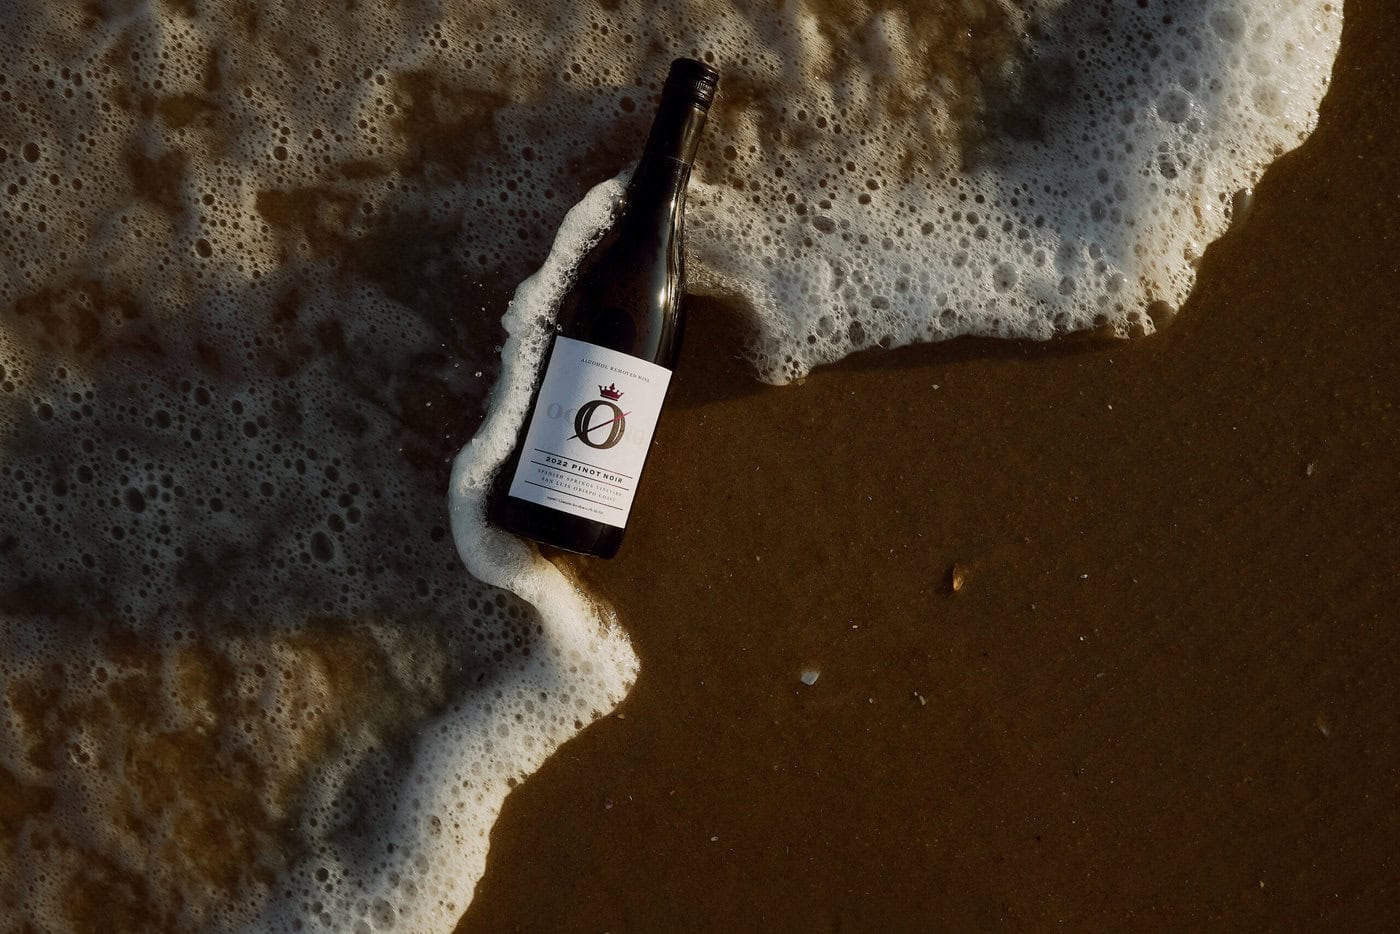 Oceano Zero Non-Alcoholic Wine Case Study